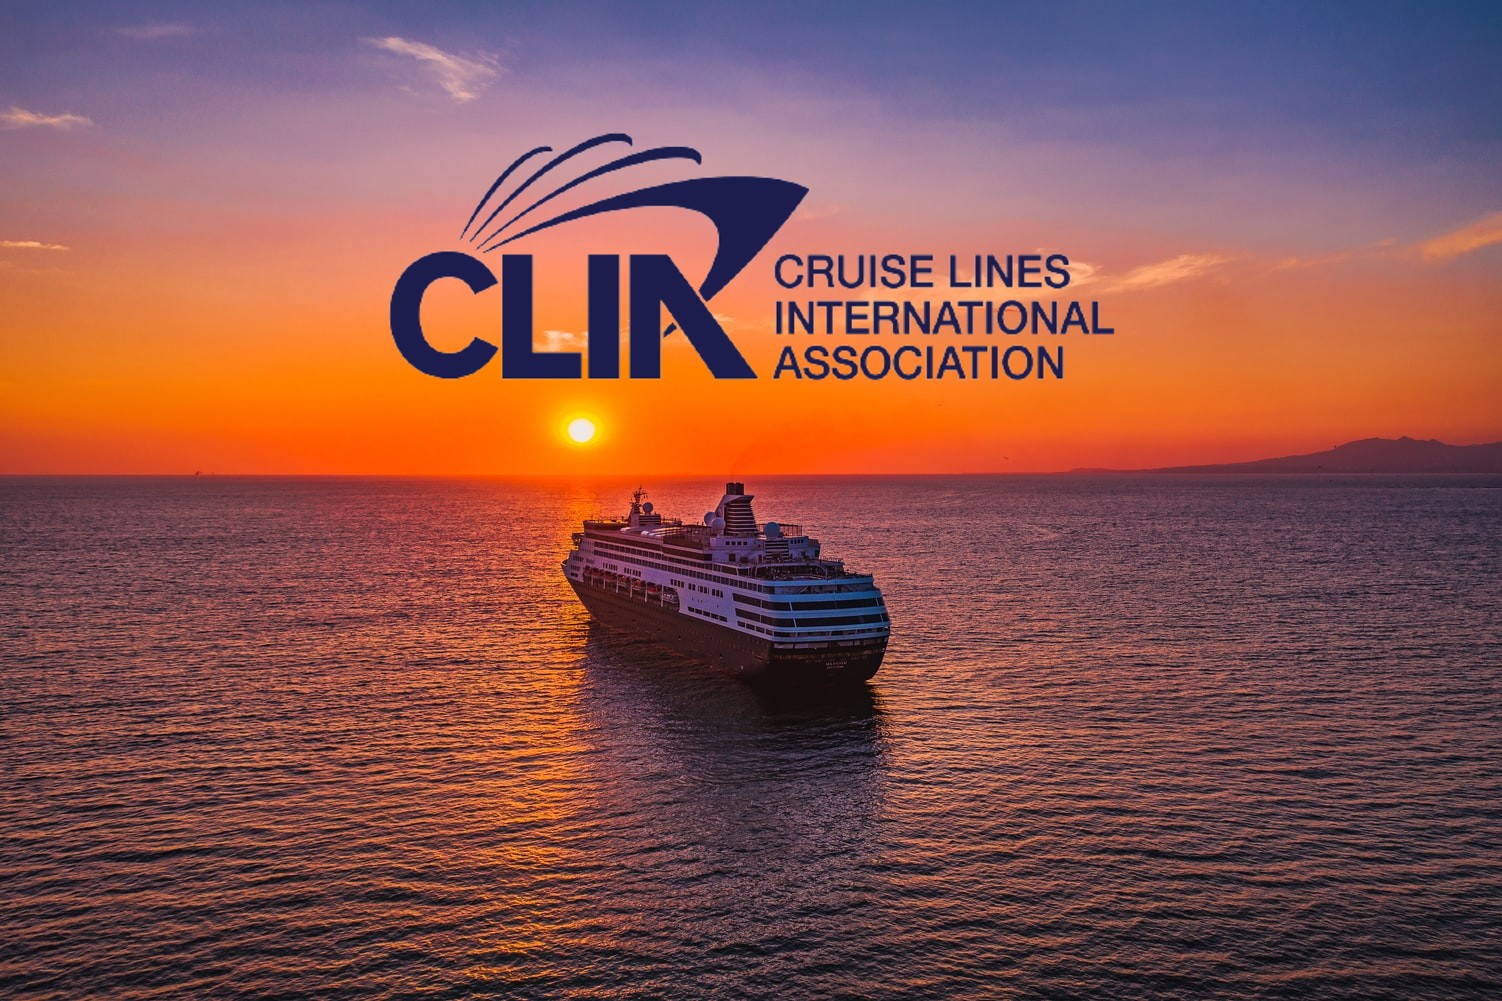 clia cruise rules